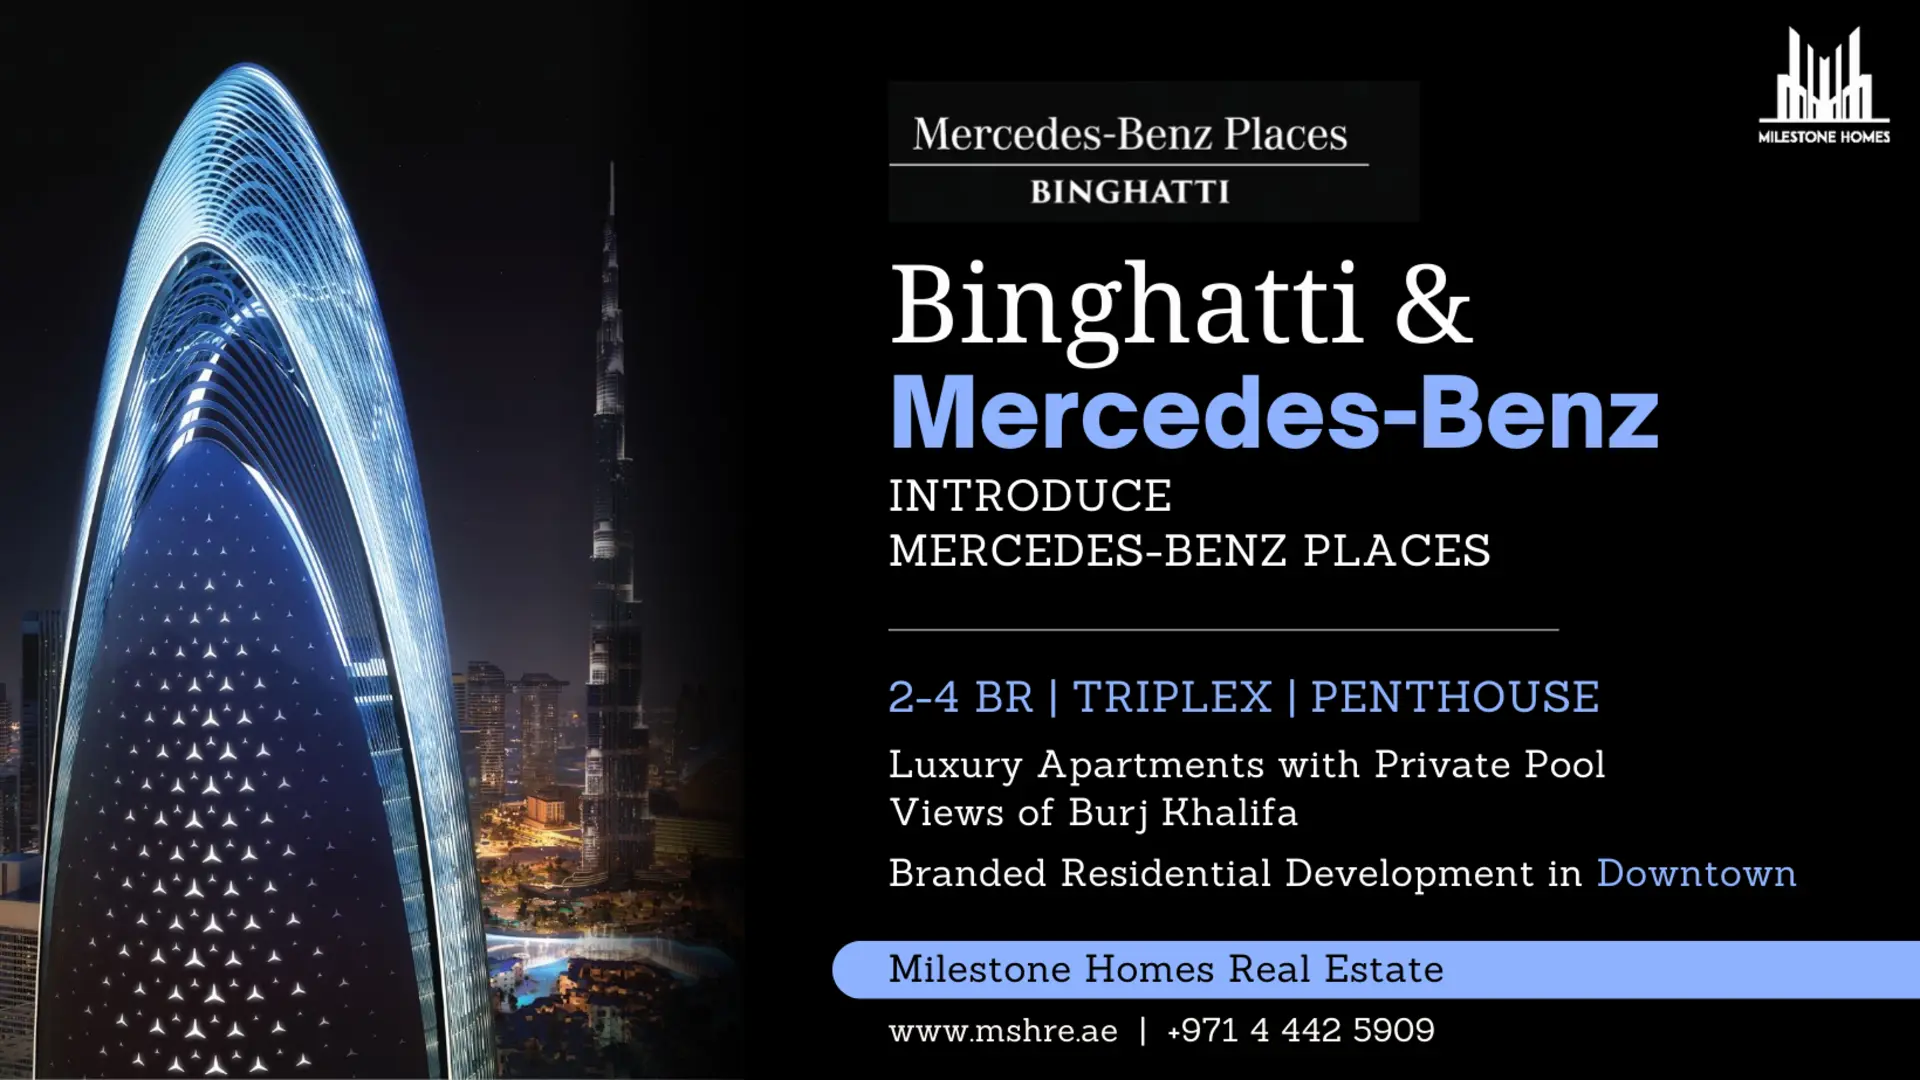 Binghatti Properties & Mercedes Announces 'Mercedes-Benz Places’